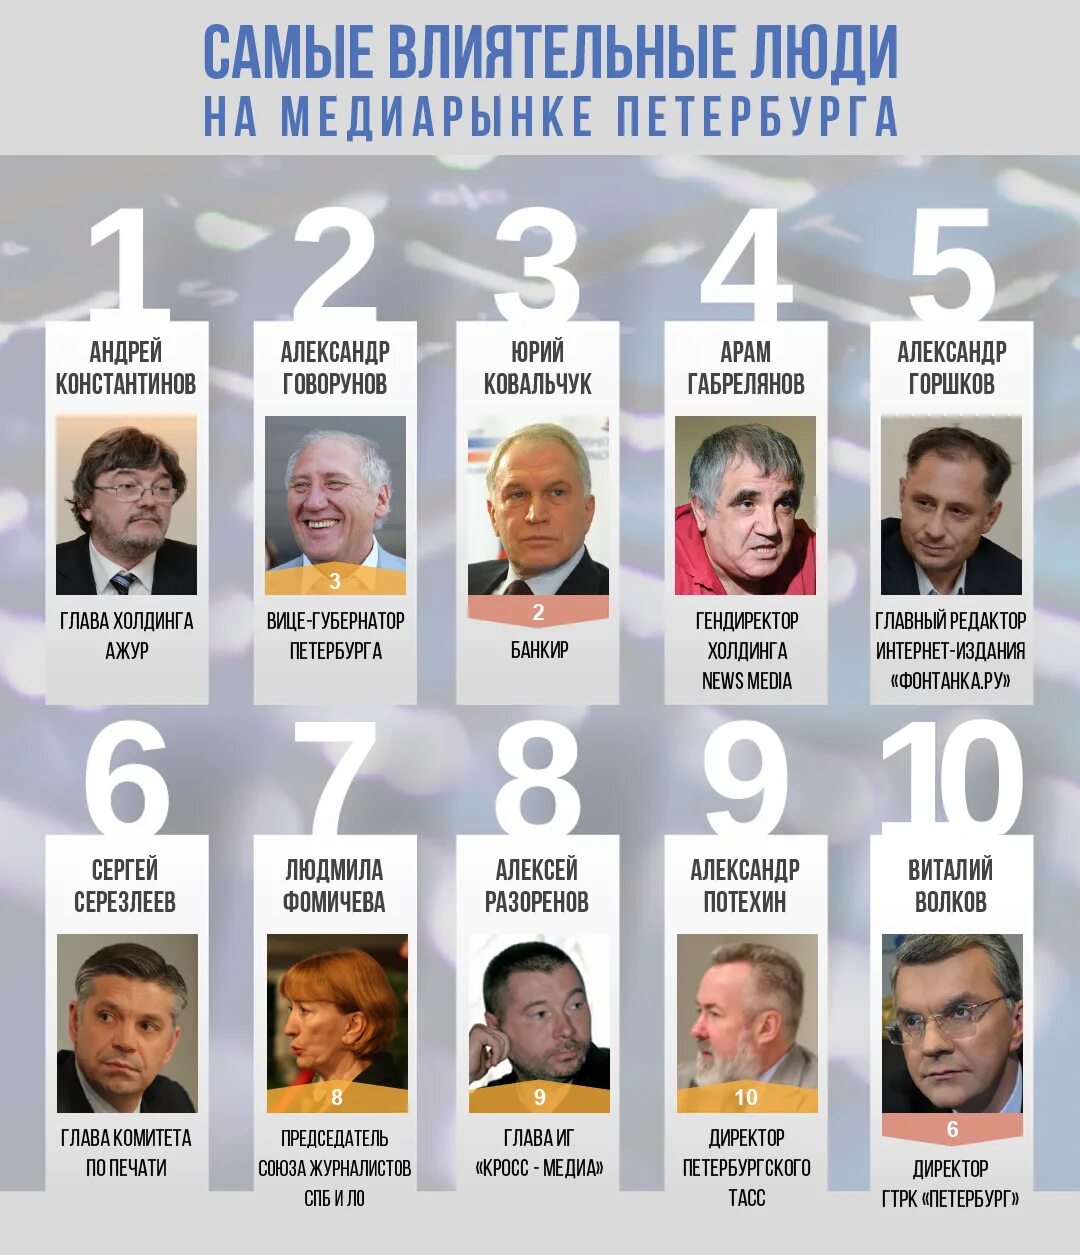 Самые богатые имена. Влиятельные люди СПБ. Самые влиятельные люди Москвы. Самый влиятельный человек. Богатые влиятельные люди.